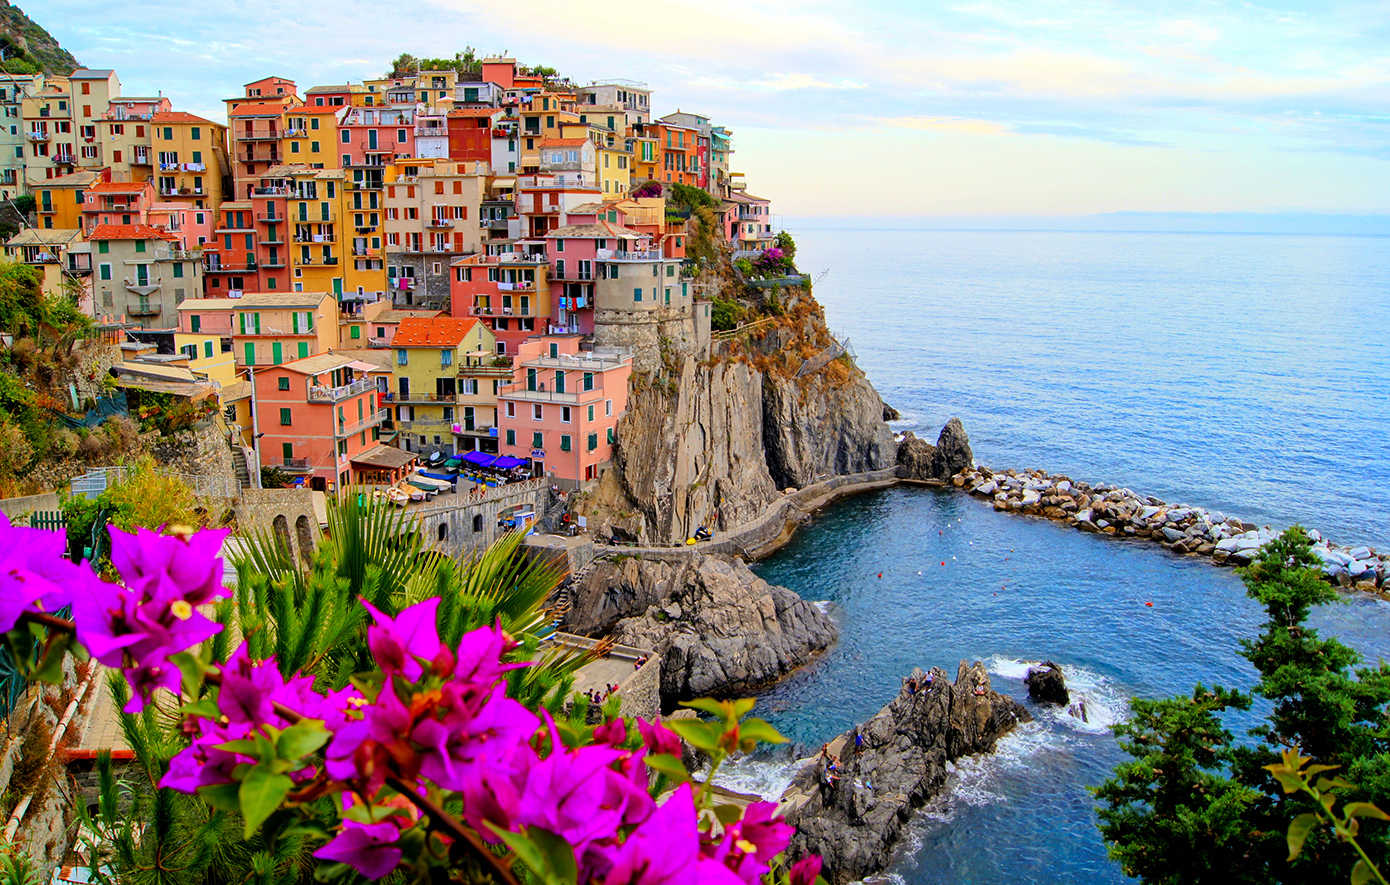 Το μικρό και χρωματιστό χωριό της Ιταλίας με τη μαγευτική θέα